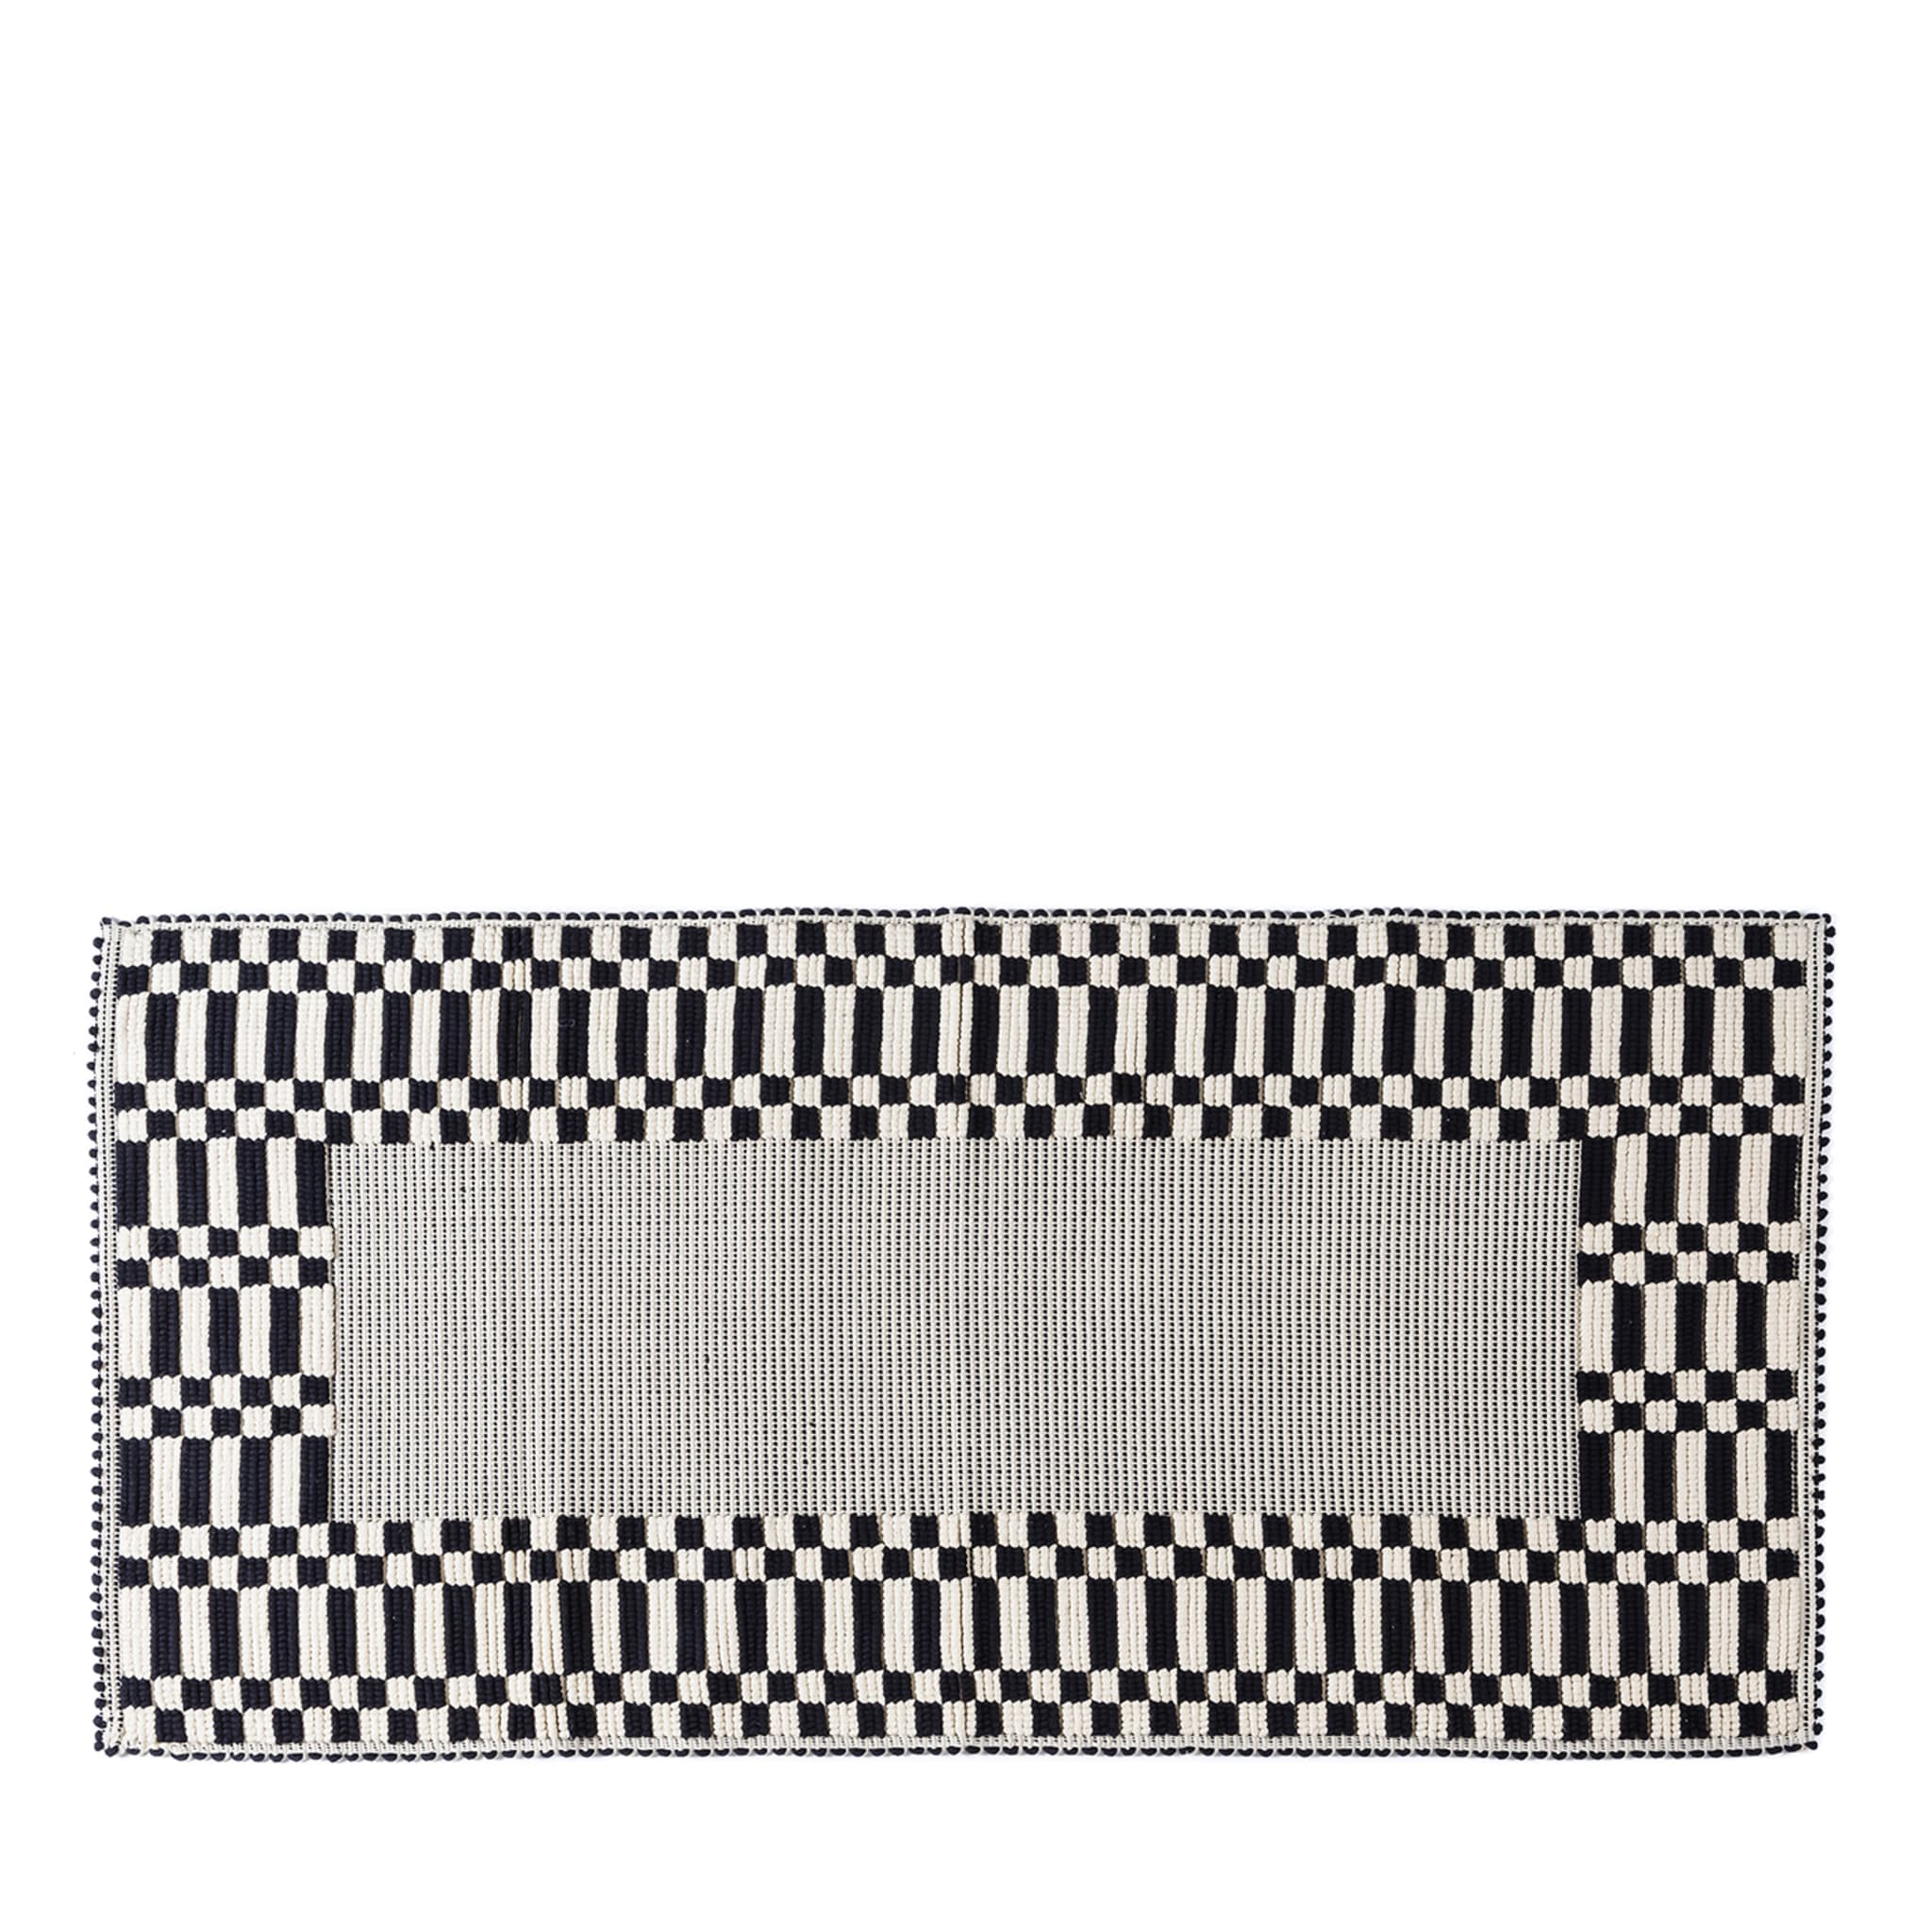 Tappeto rettangolare Bisaccia a scacchi bianchi e neri - Vista principale